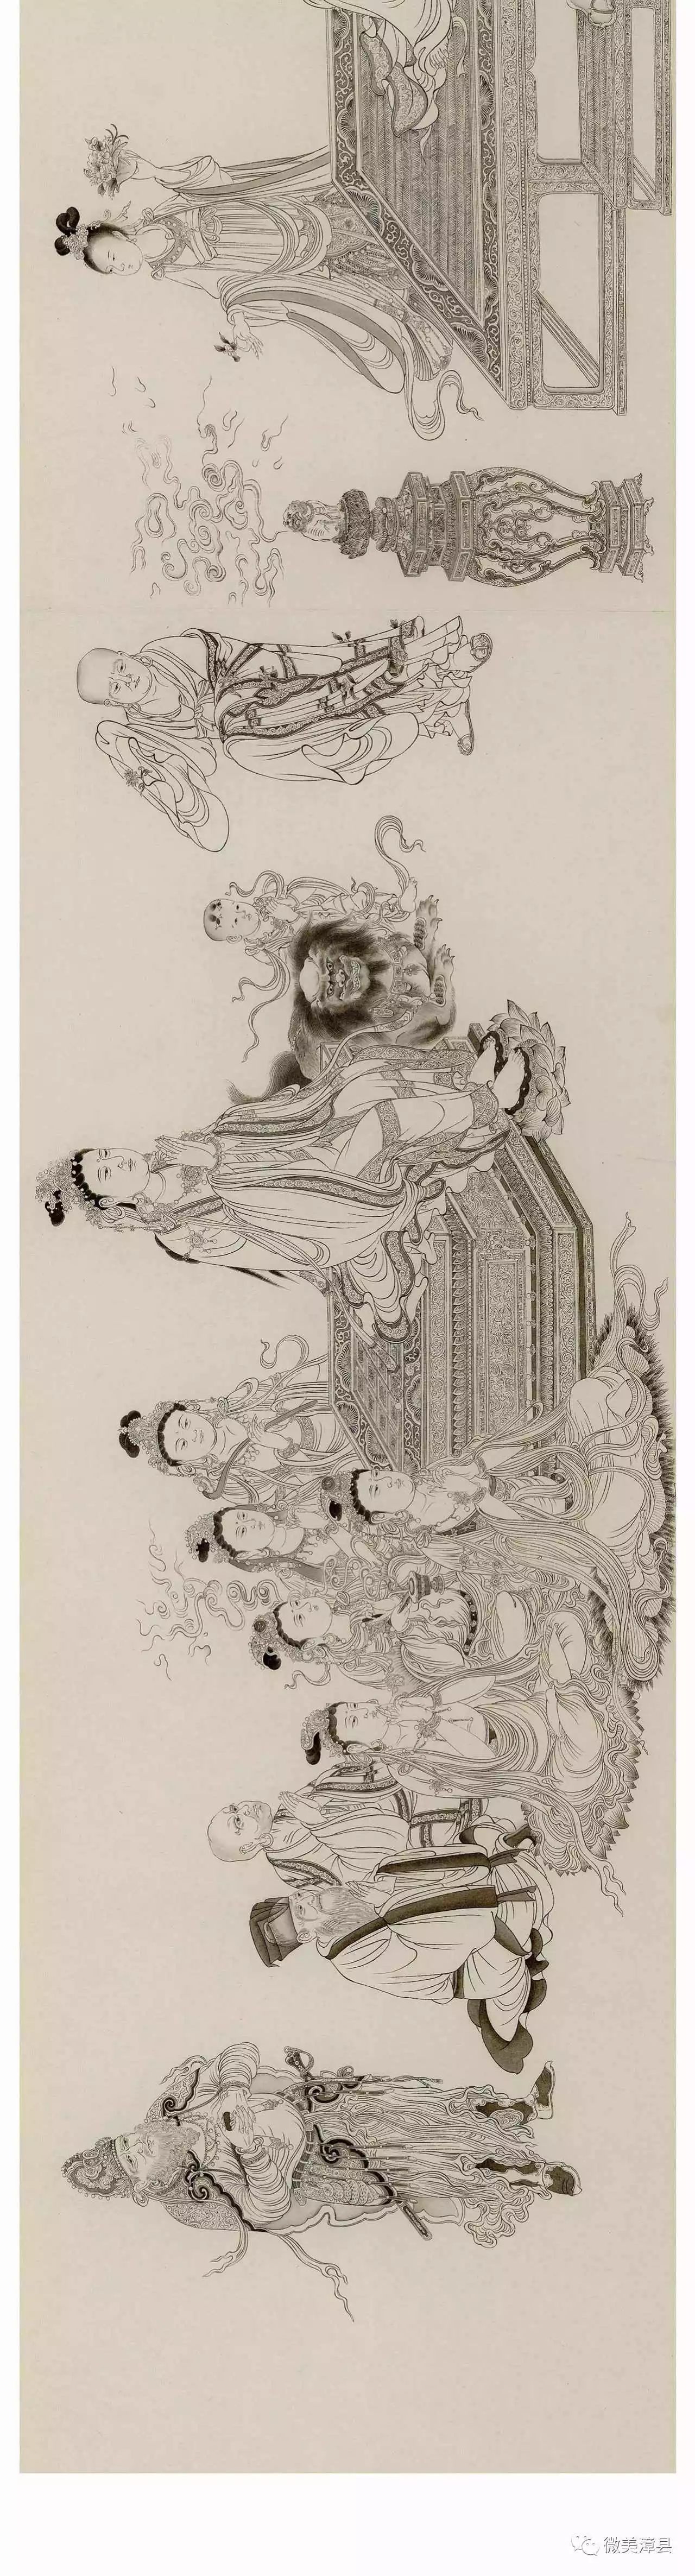 维摩演教图,北宋,李公麟,纸本,34.6cm×207.5cm.